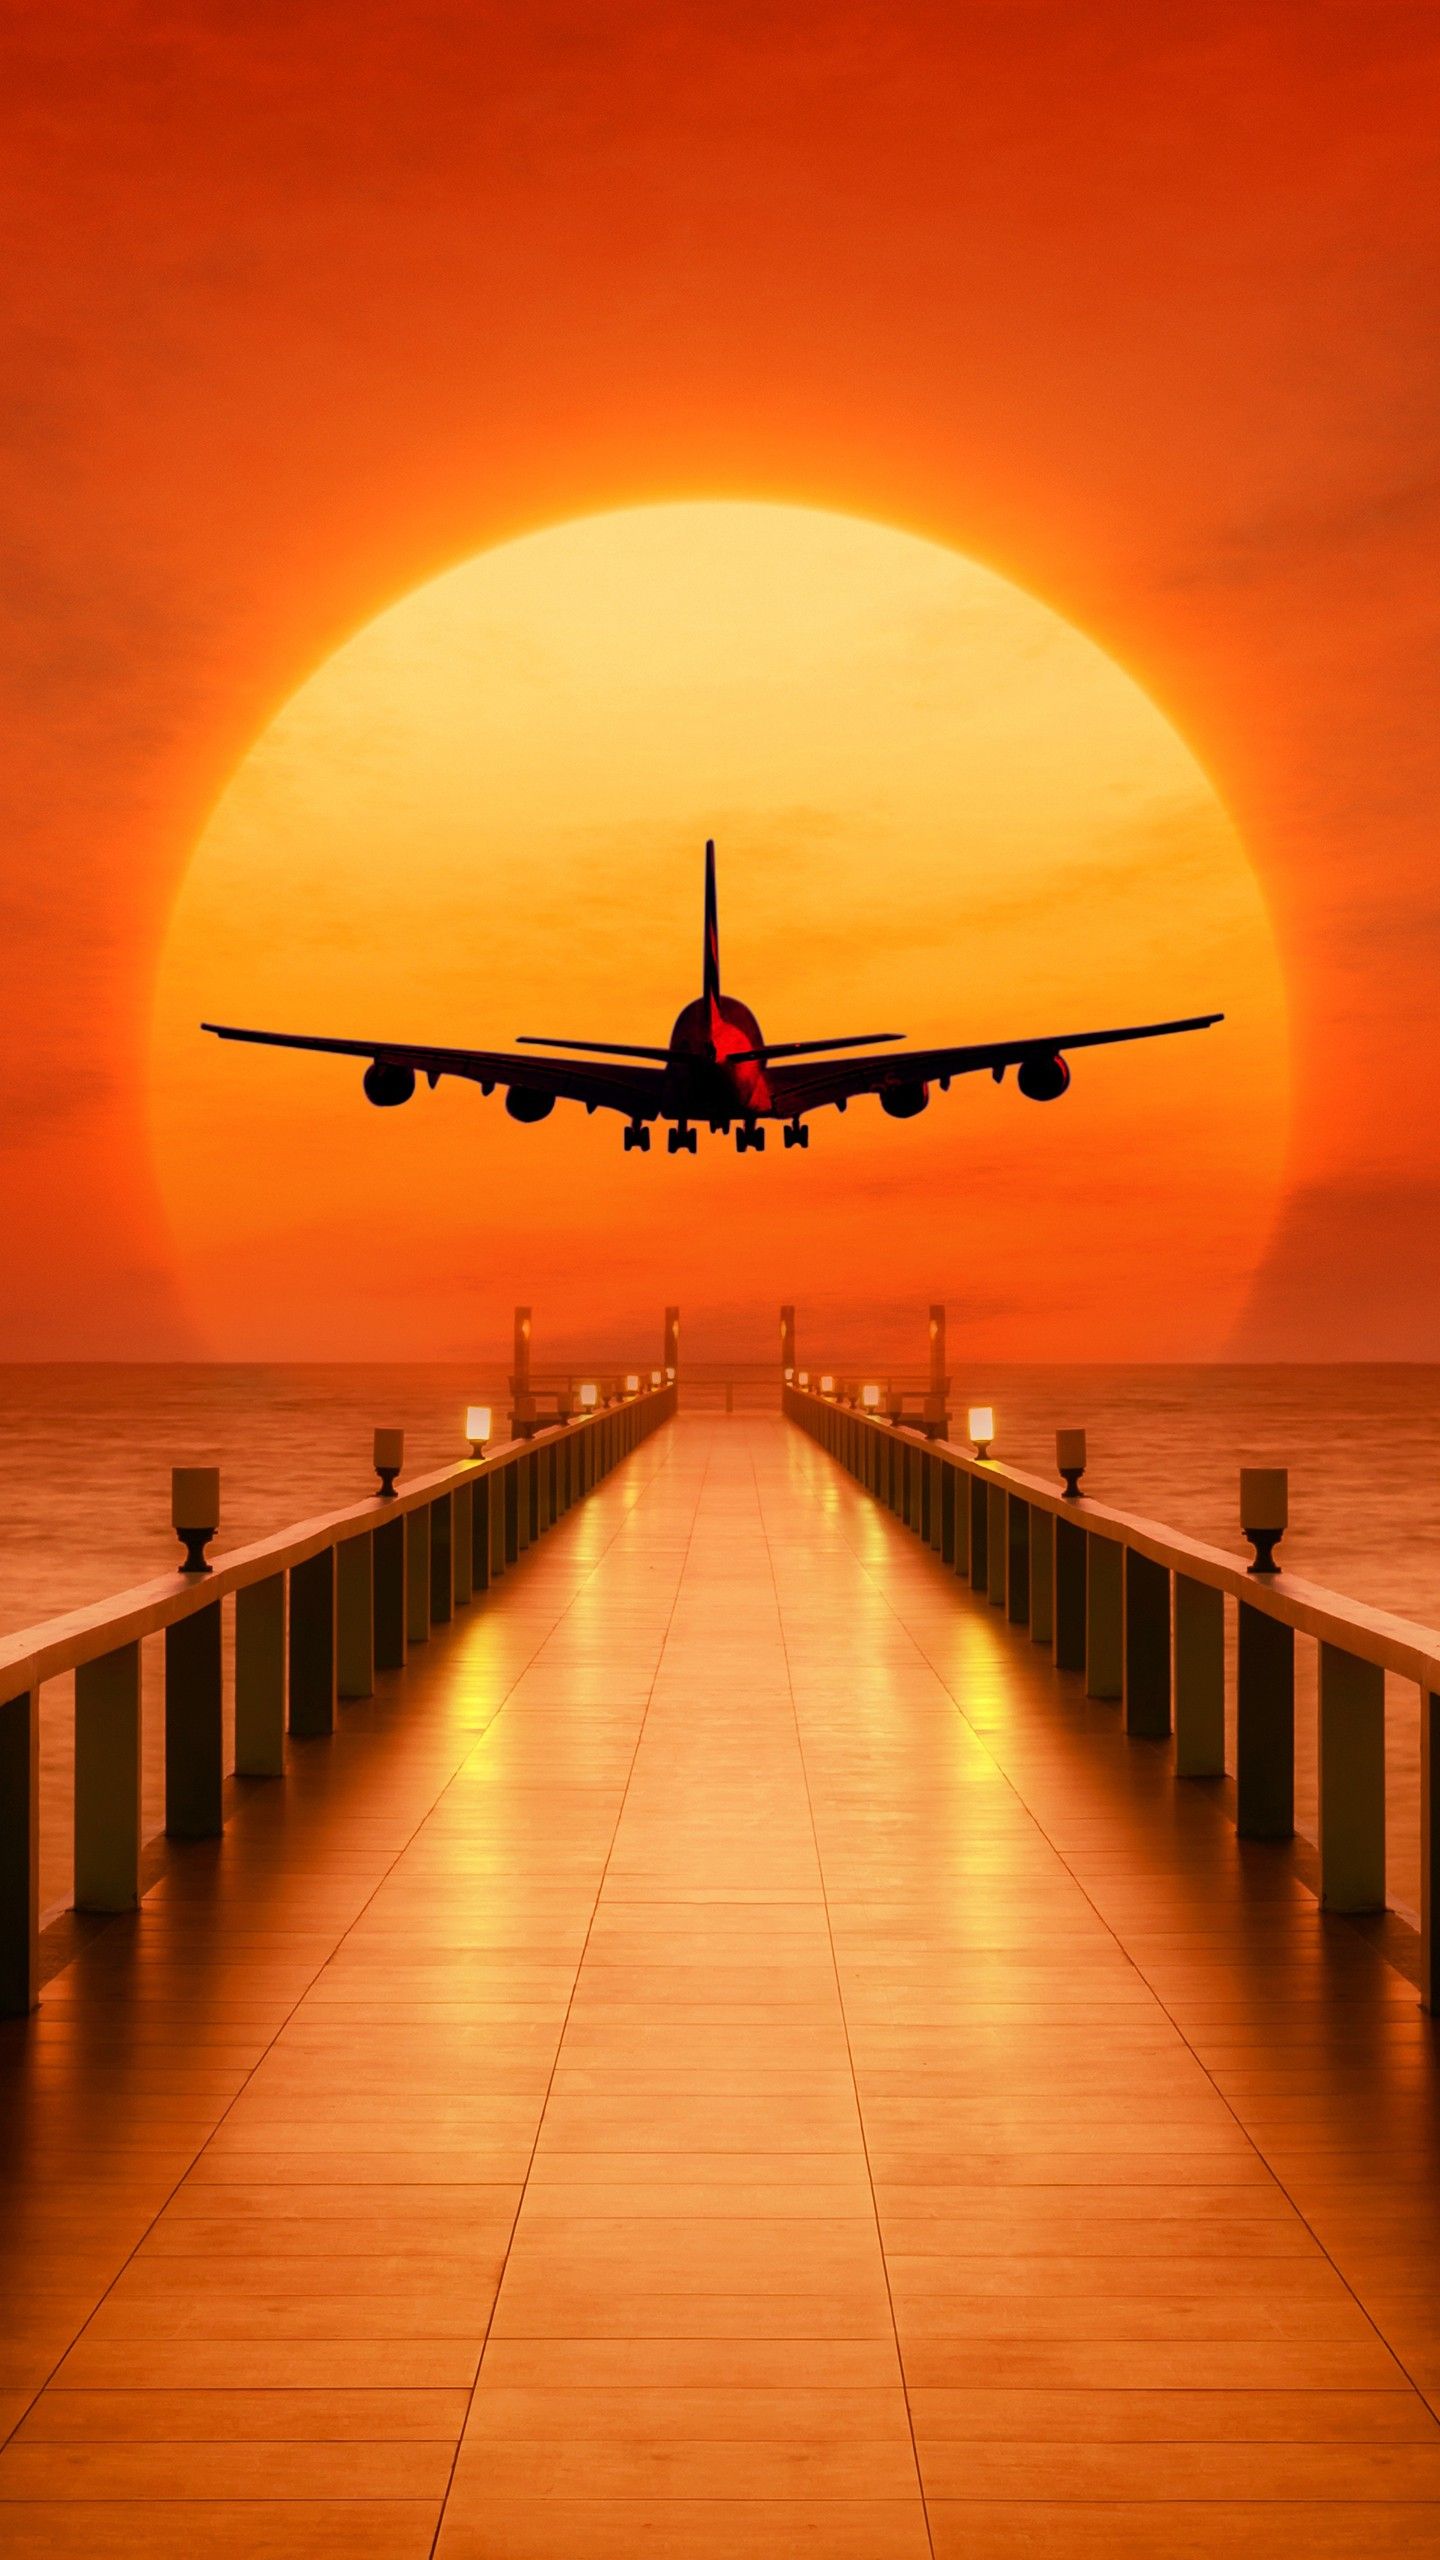 Sunset Airplane Wallpaper Hd - HD Wallpaper 